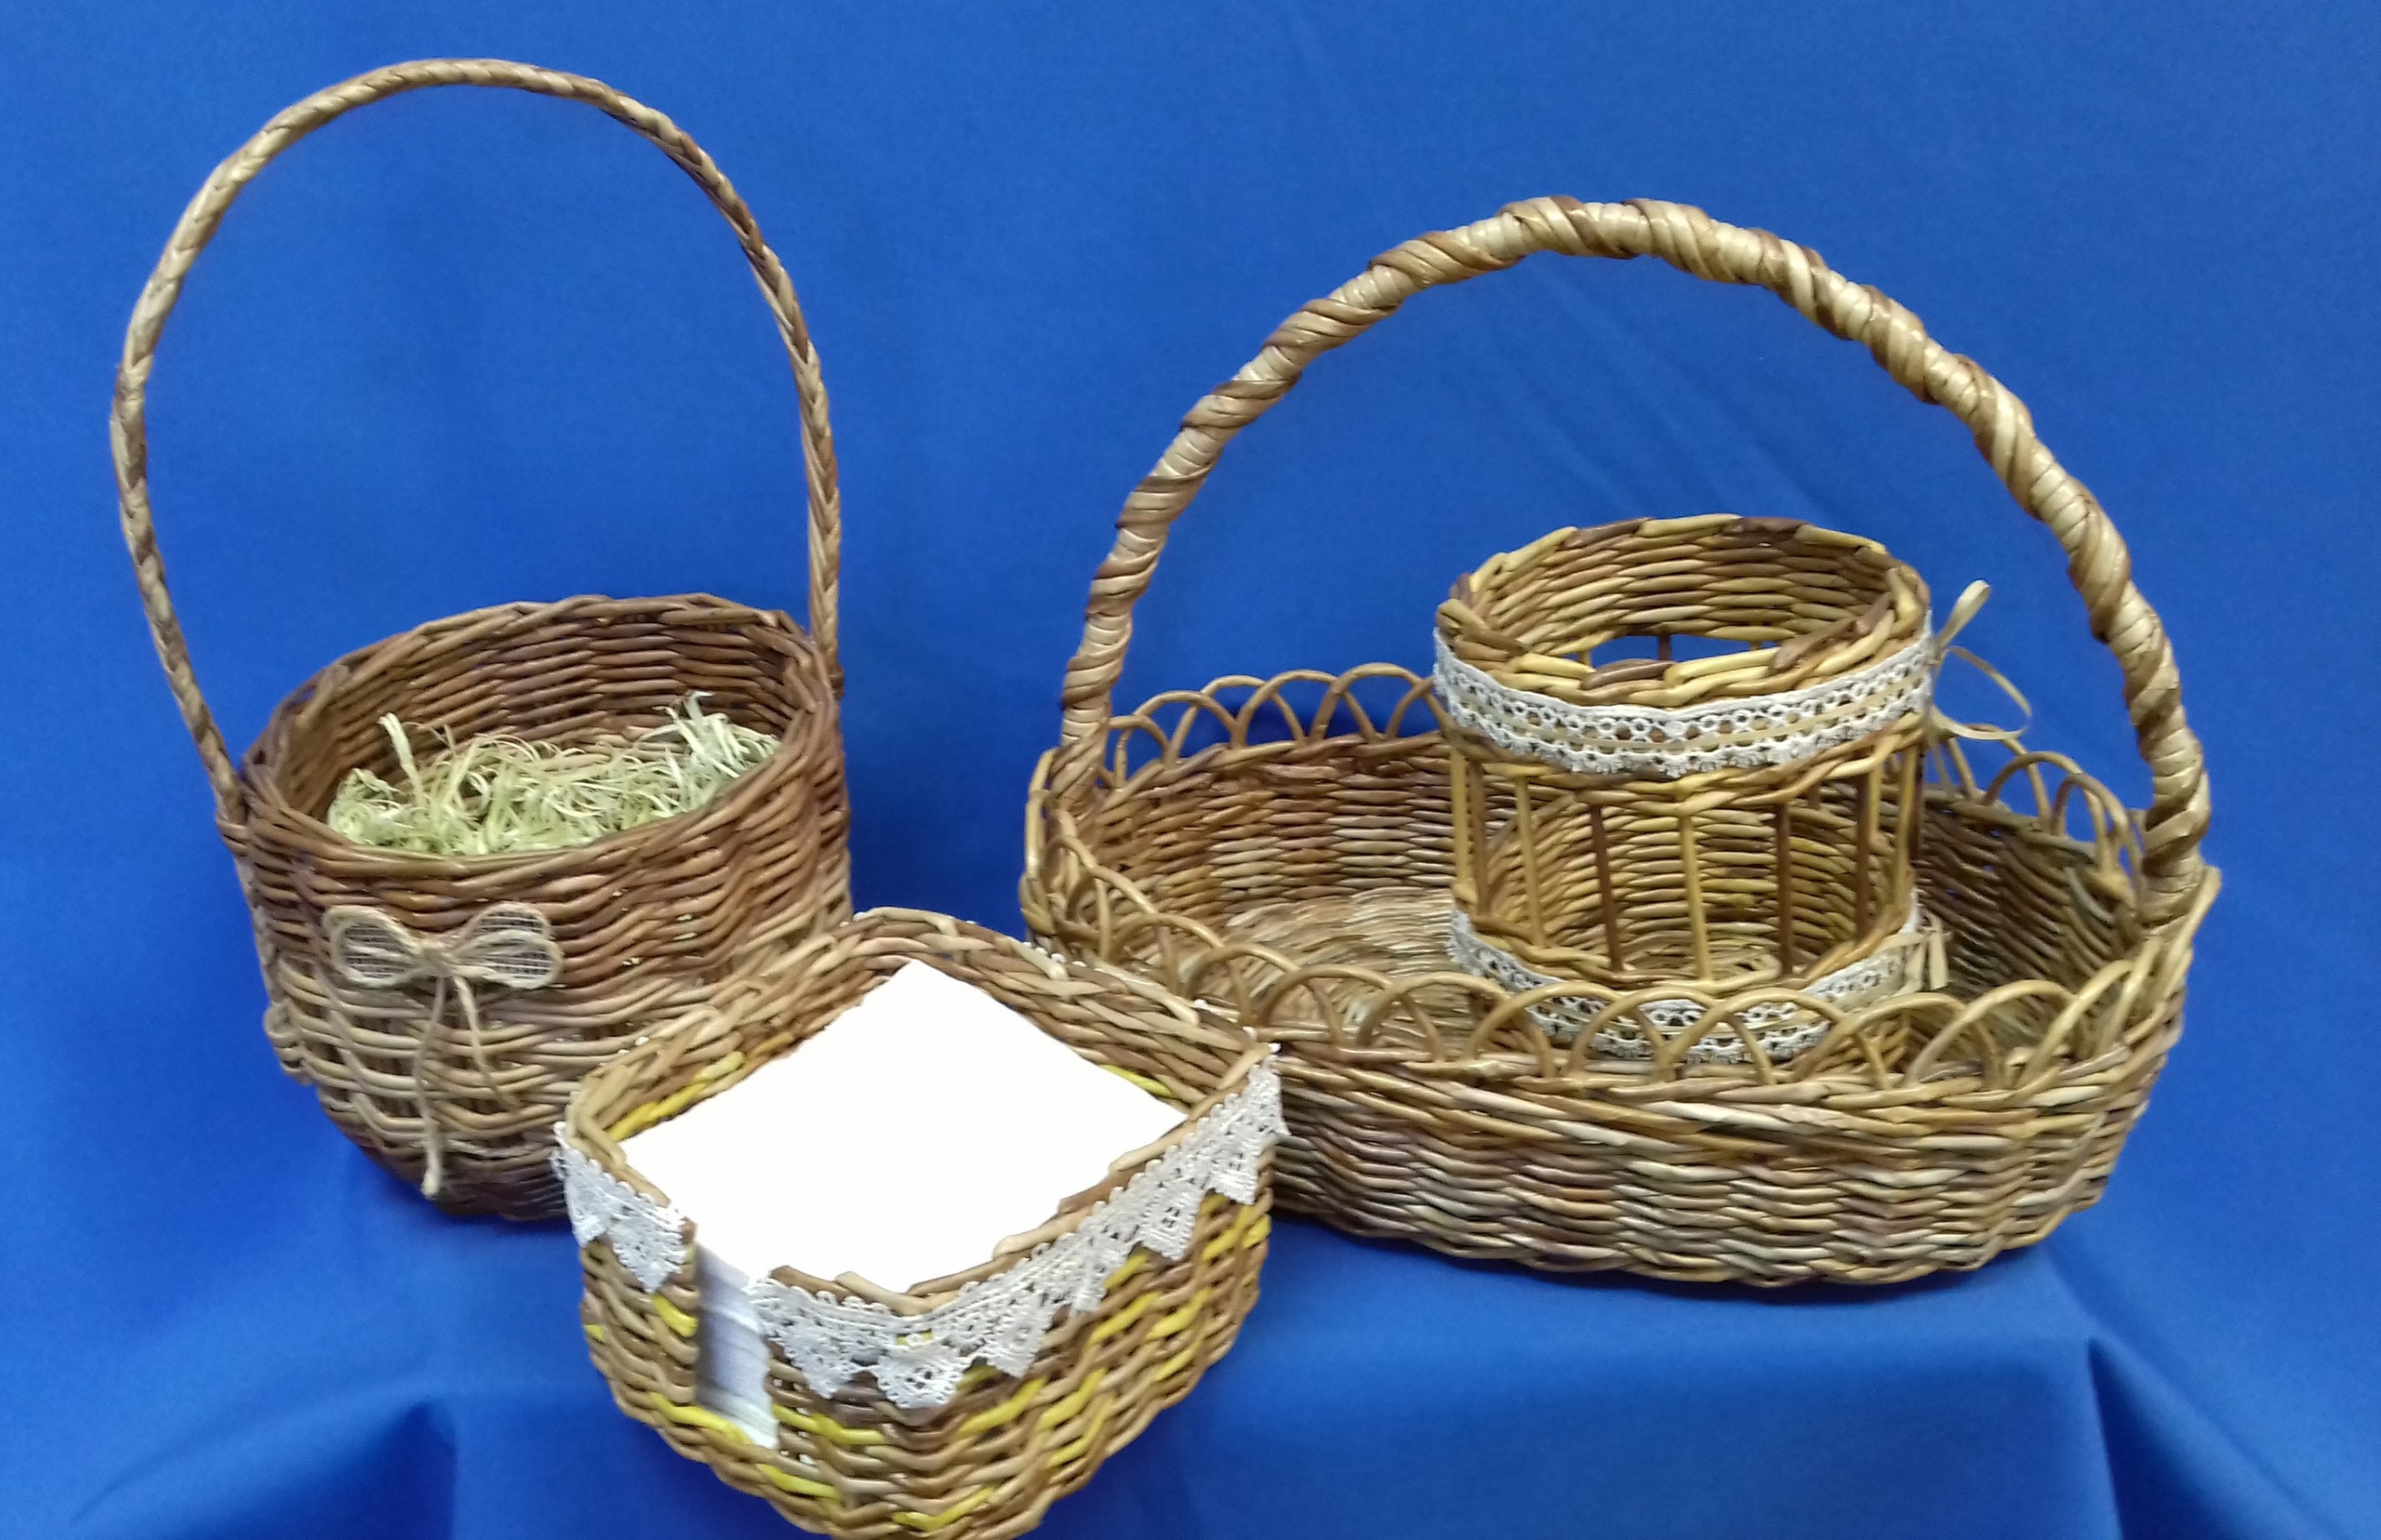 Мастер-класс по плетению корзин из газетных трубочек: фото плетения корзинок с ручками